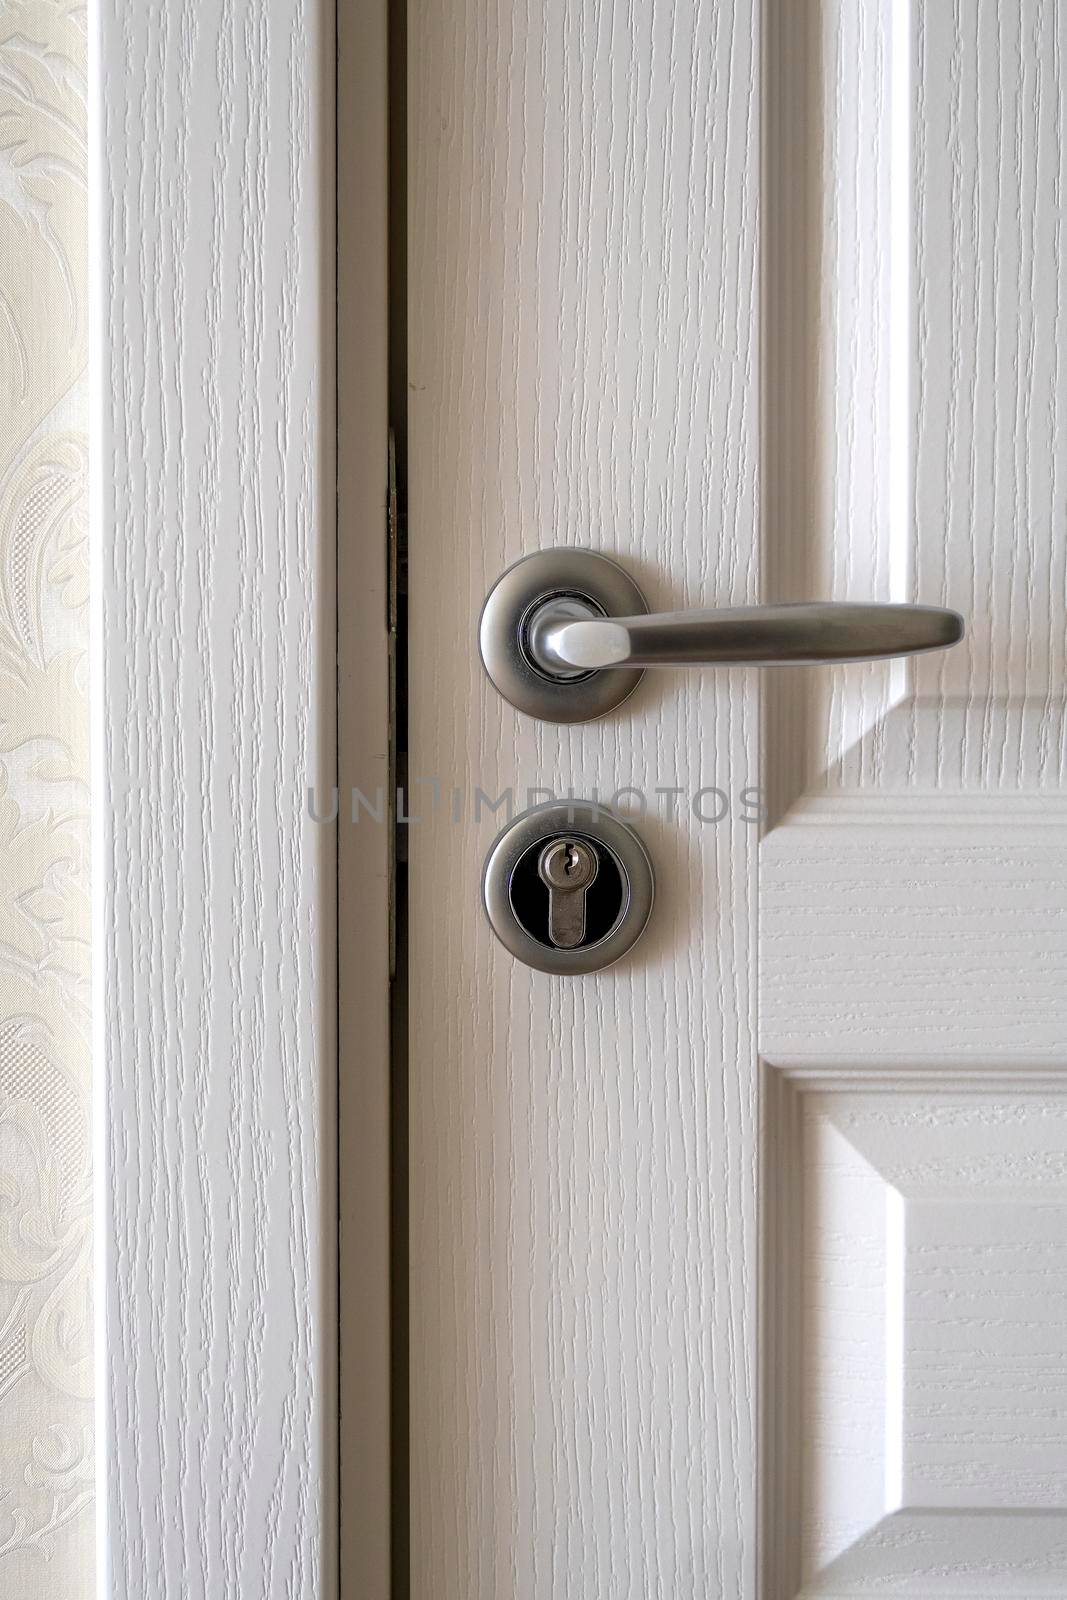 Exterior door handle and Security lock on Metal frame. Aluminum door knob. Modern wooden door with metal door handle